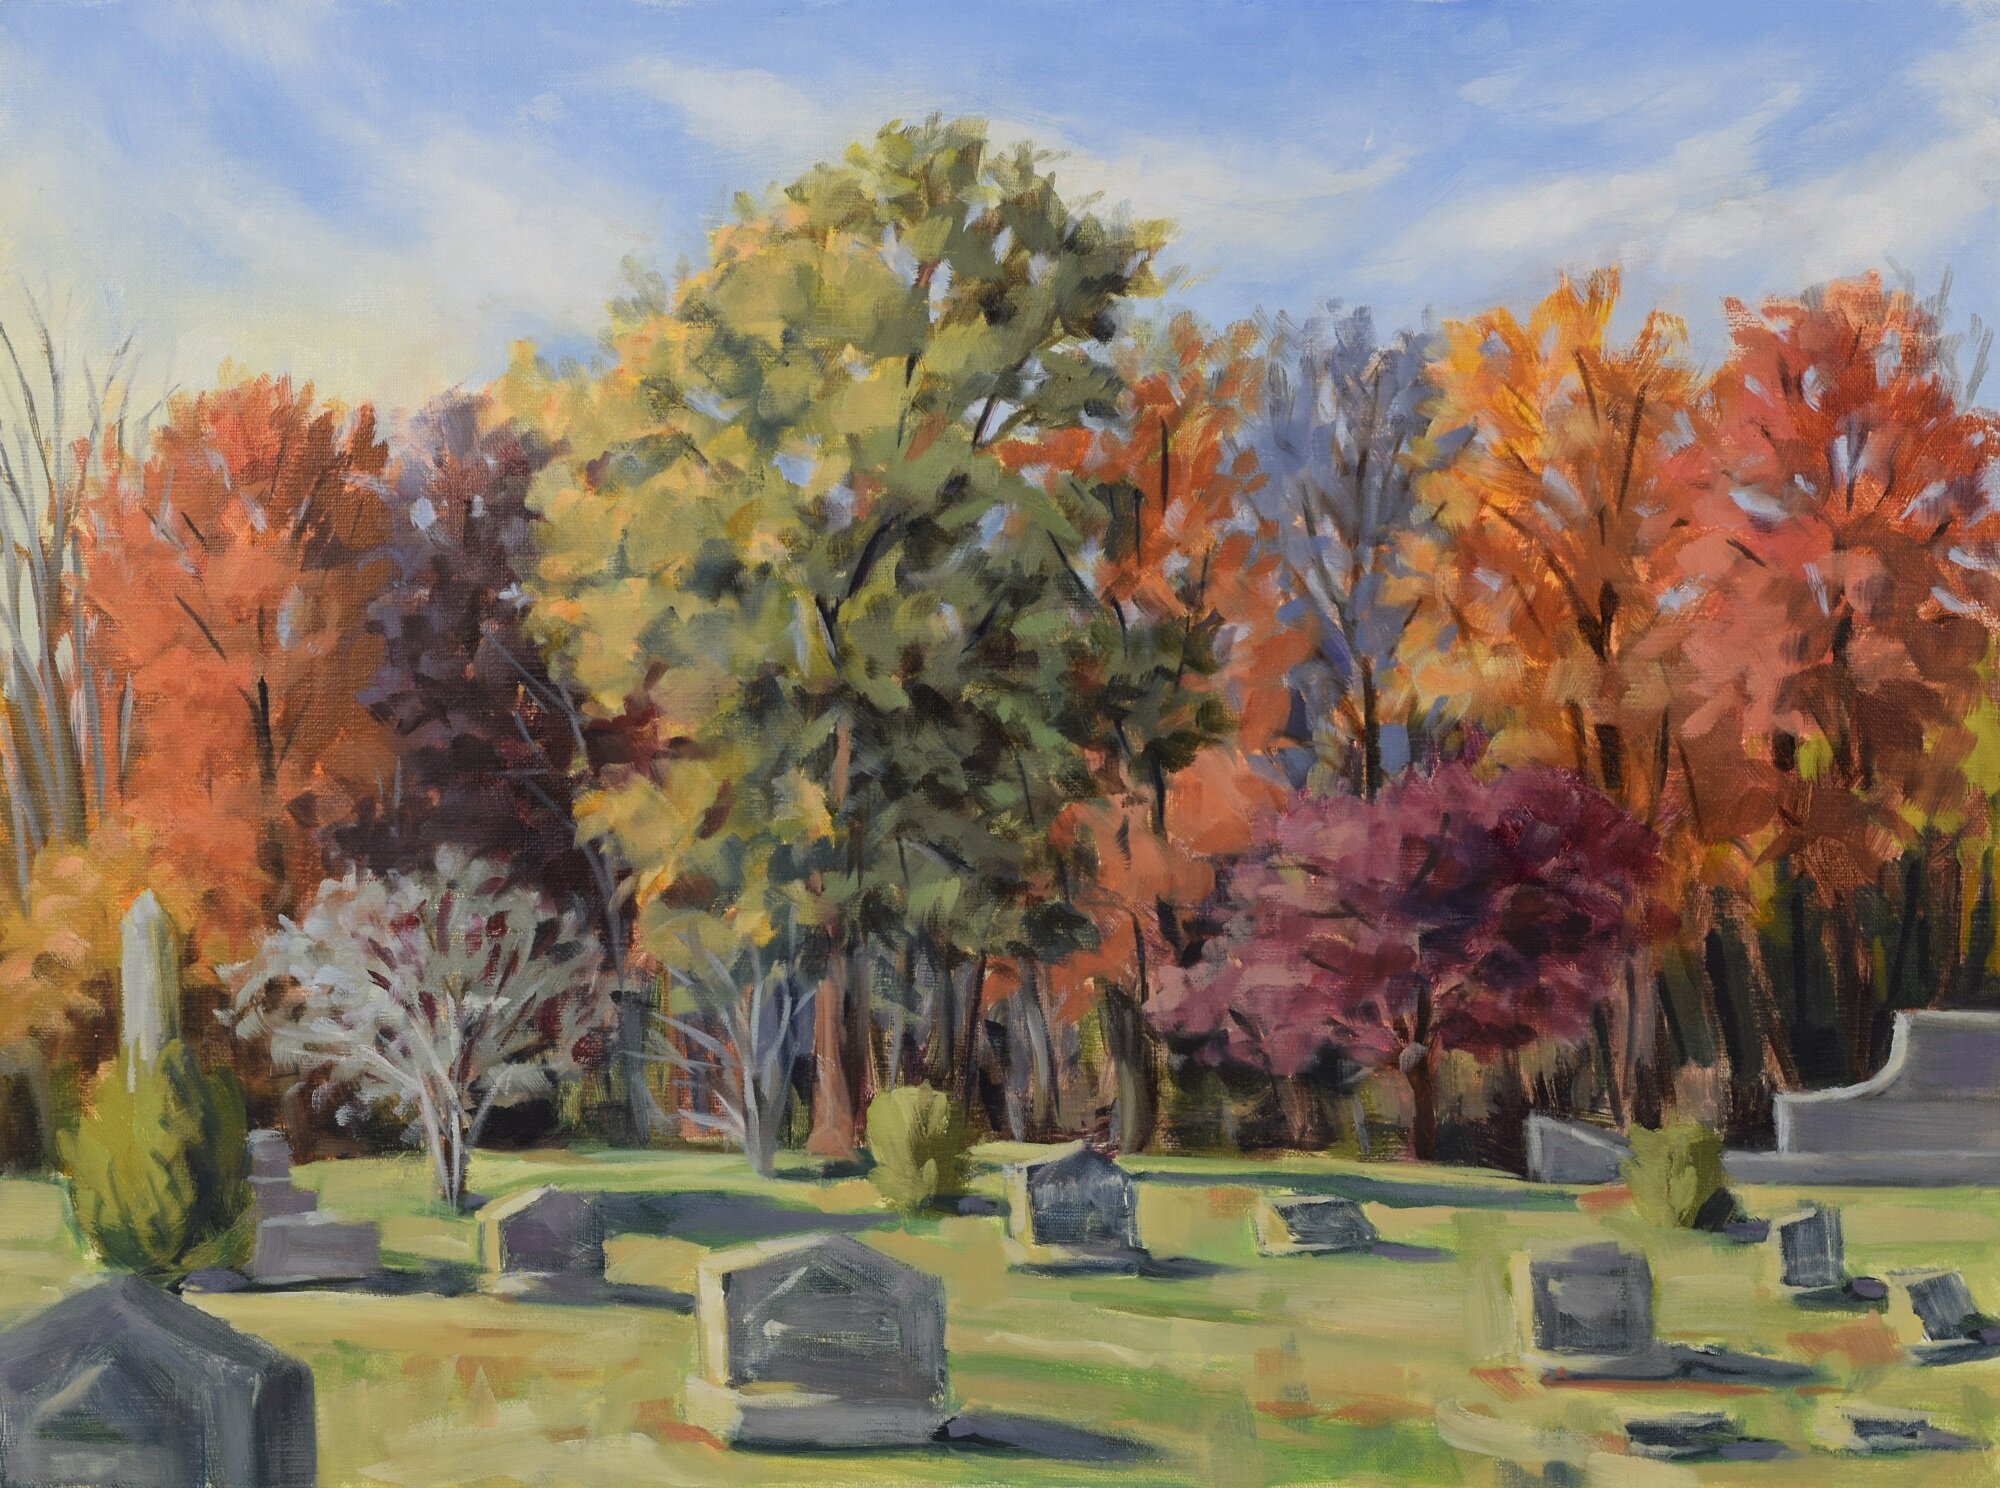 Cemetery Autumn, Oil on linen, 12x16